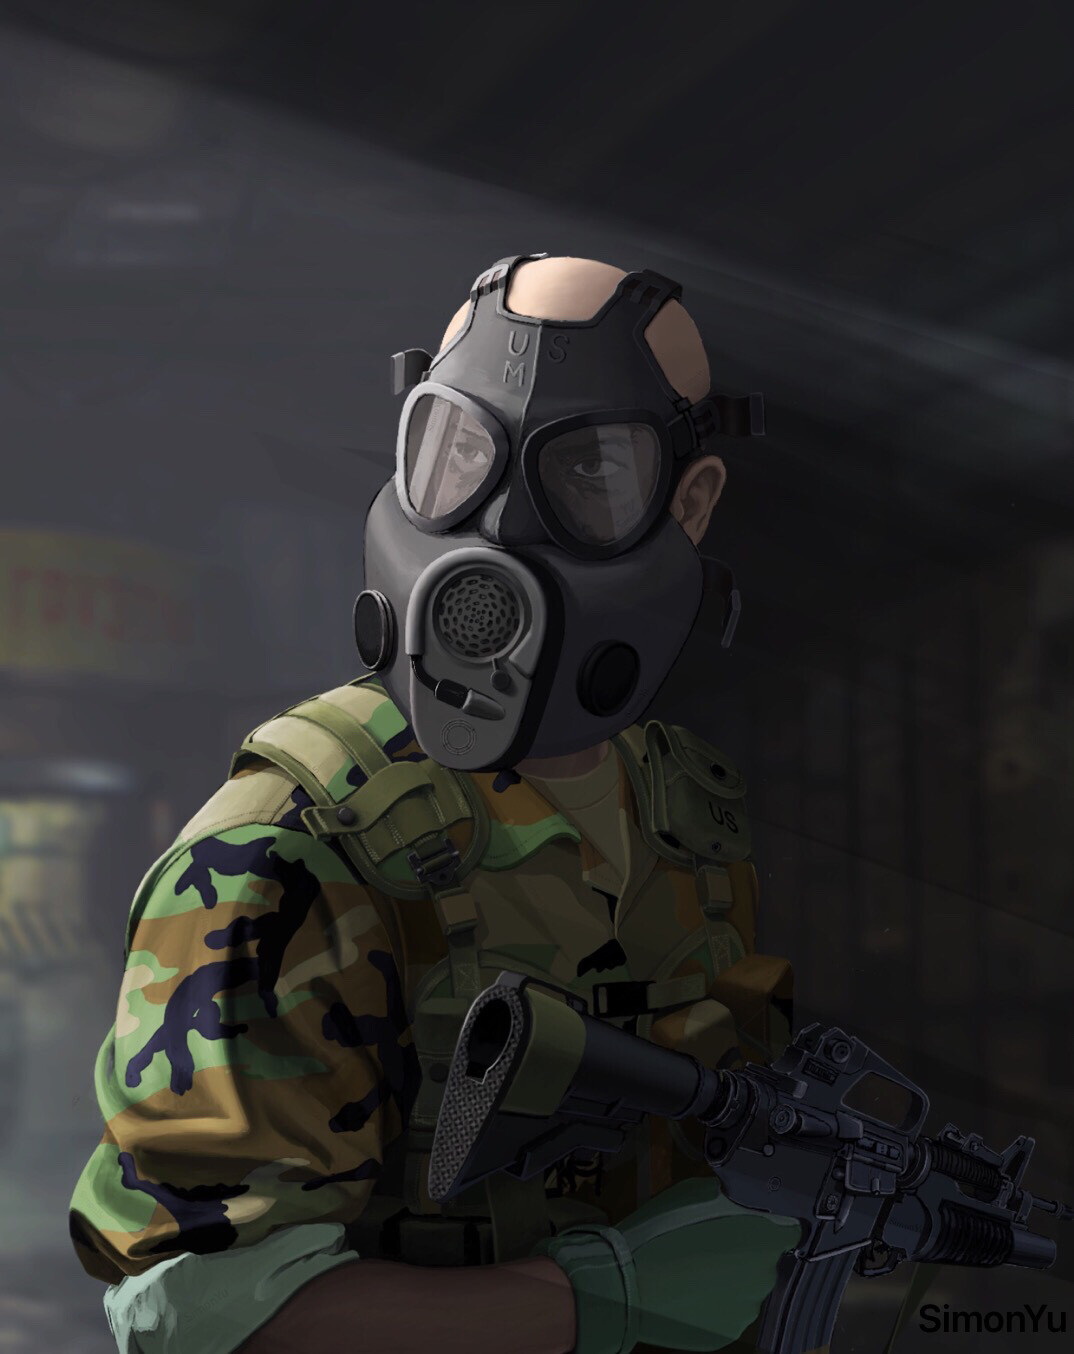 m17 gas mask